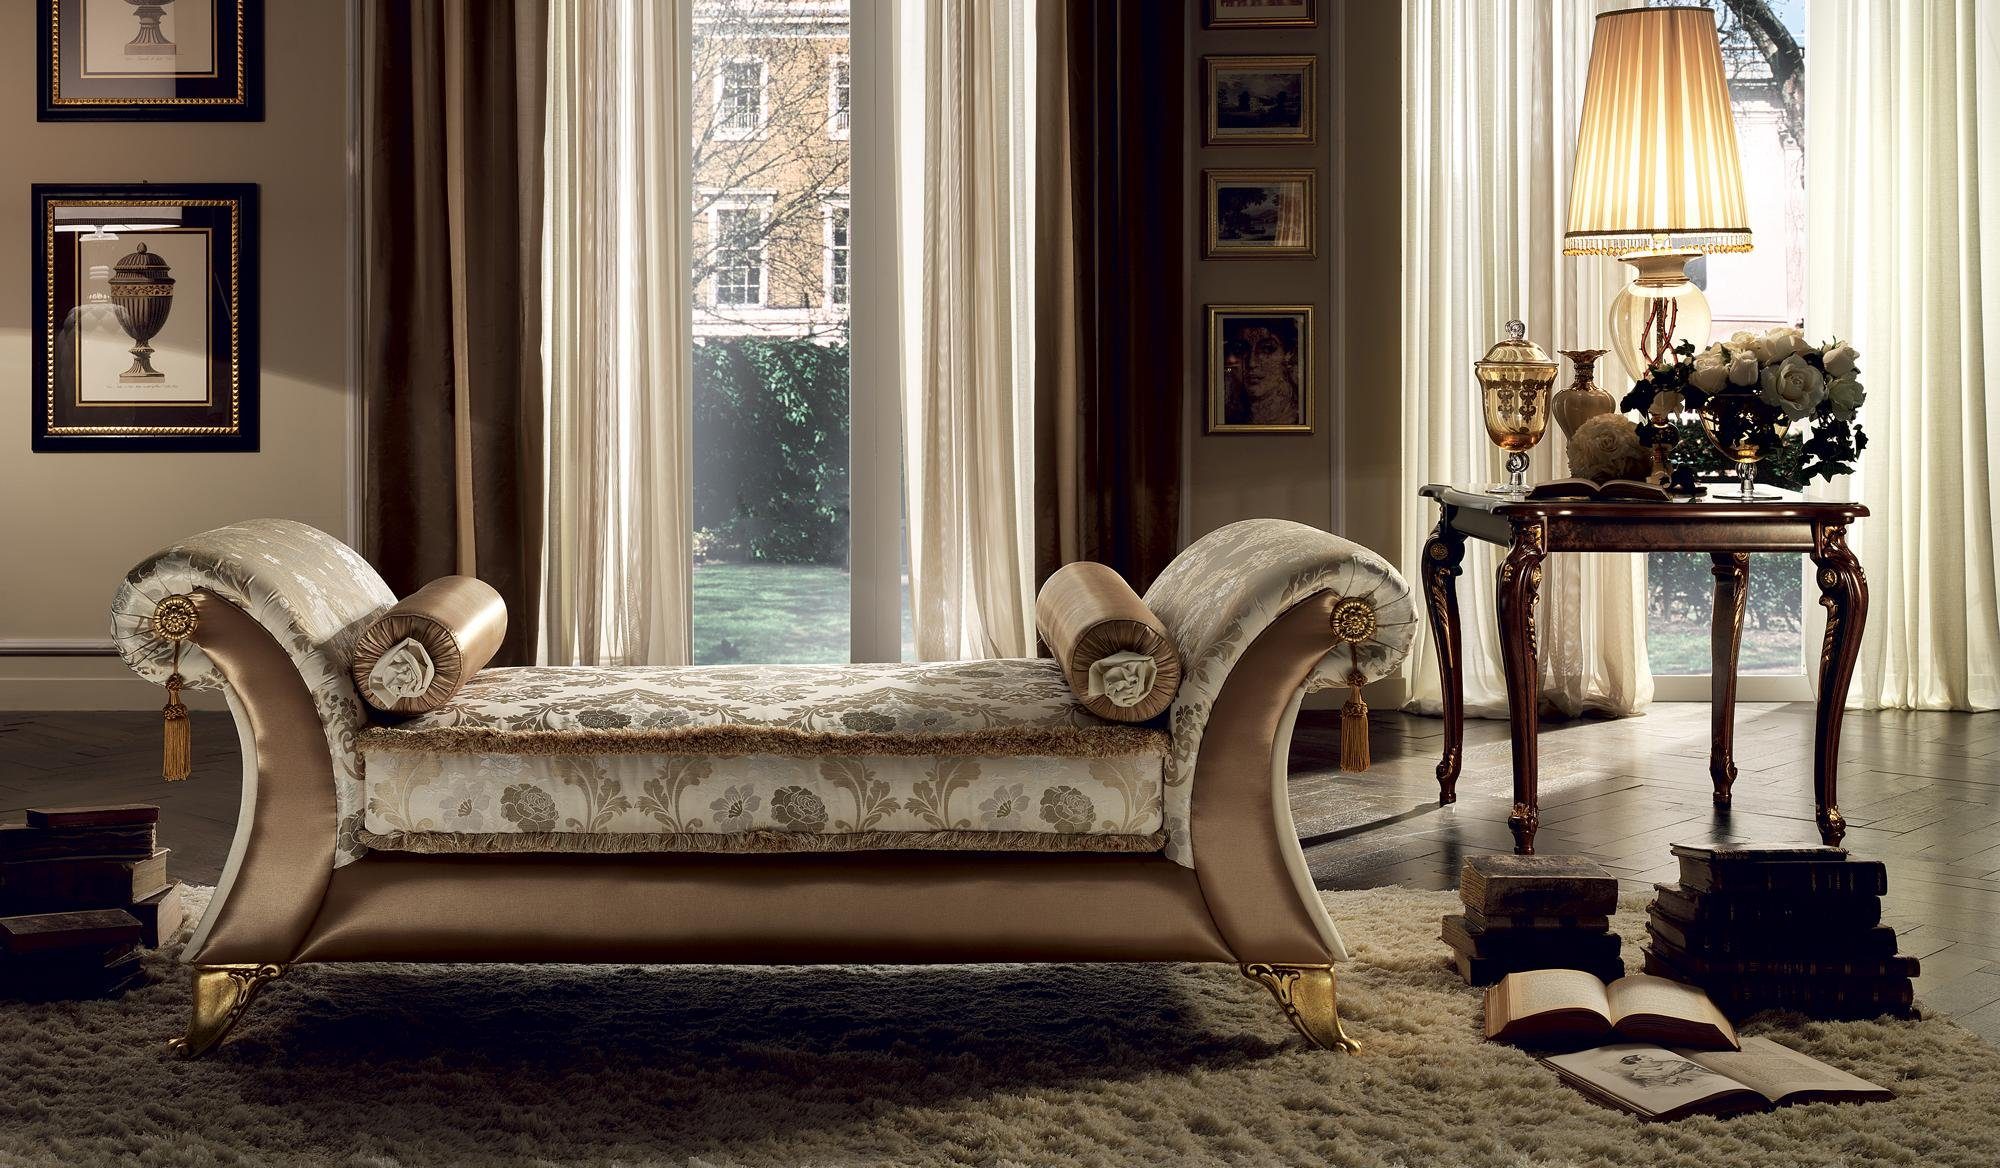 Komfortliege Luxus Barock, Europe Chaiselongue Made in Liegesessel Chaiselongue Relaxsessel JVmoebel Liege